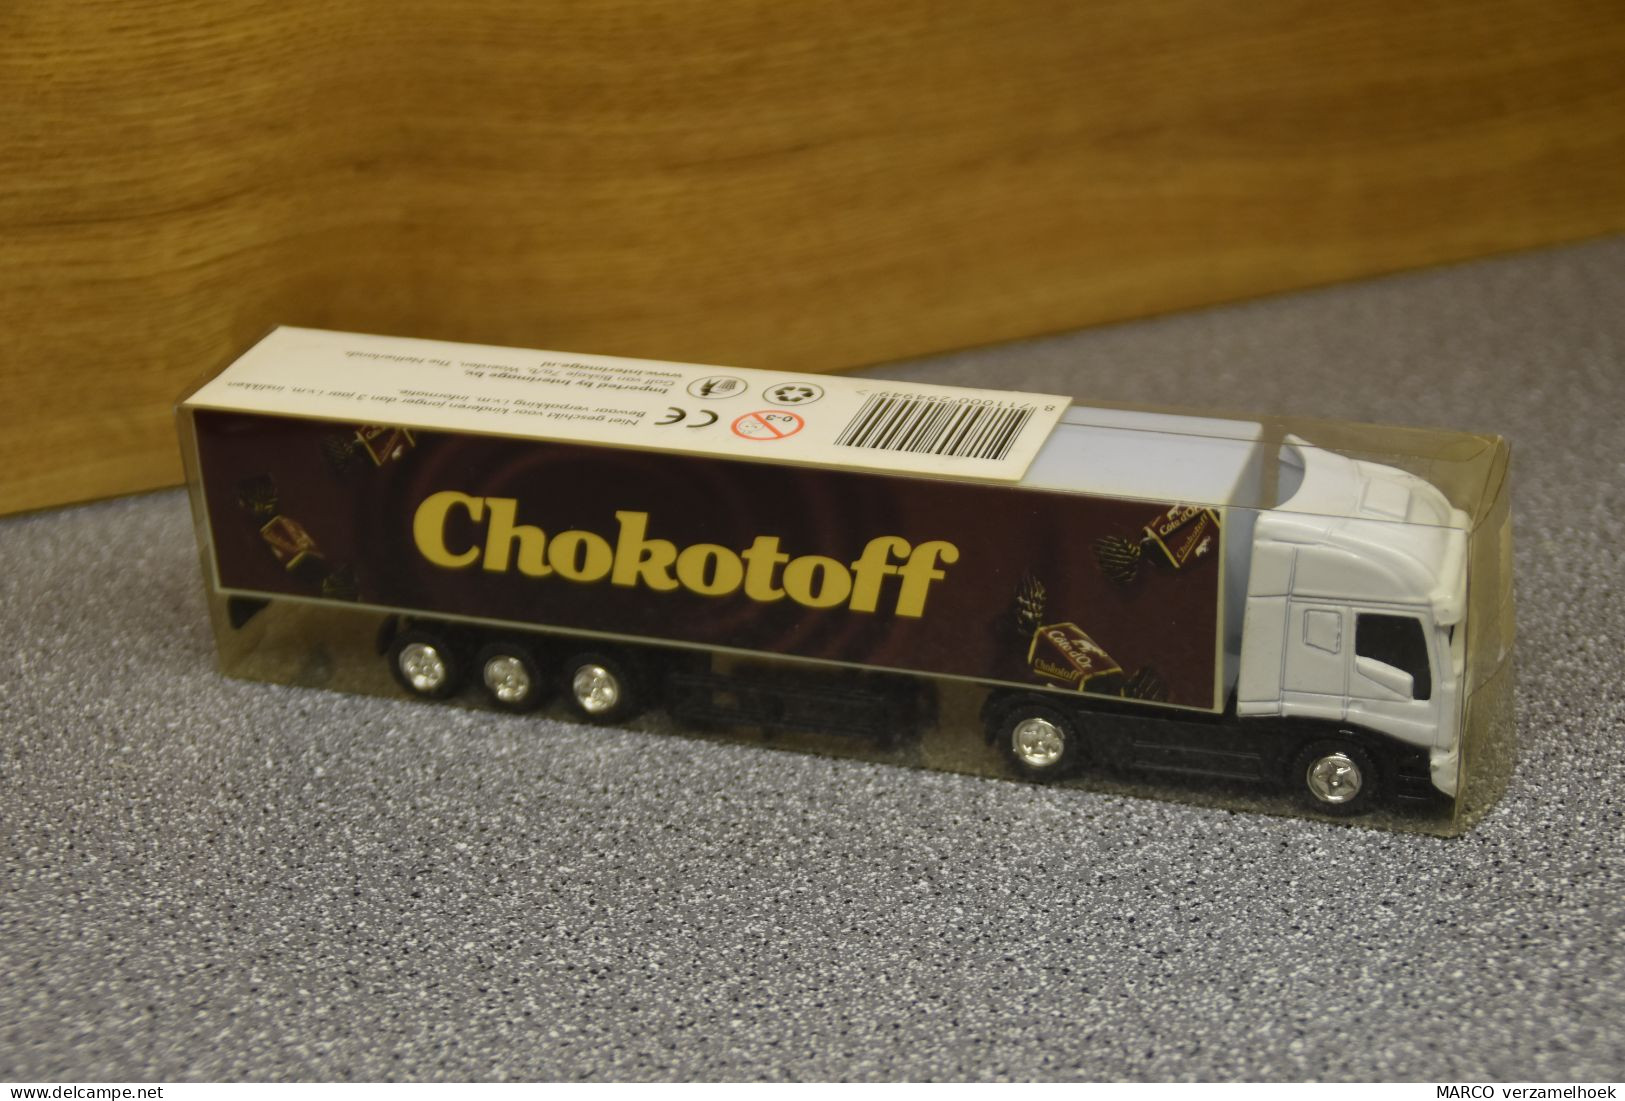 Vrachtwagen-truck Interimage Woerden (NL) Scale 1:87 Chokotoff - Schaal 1:87